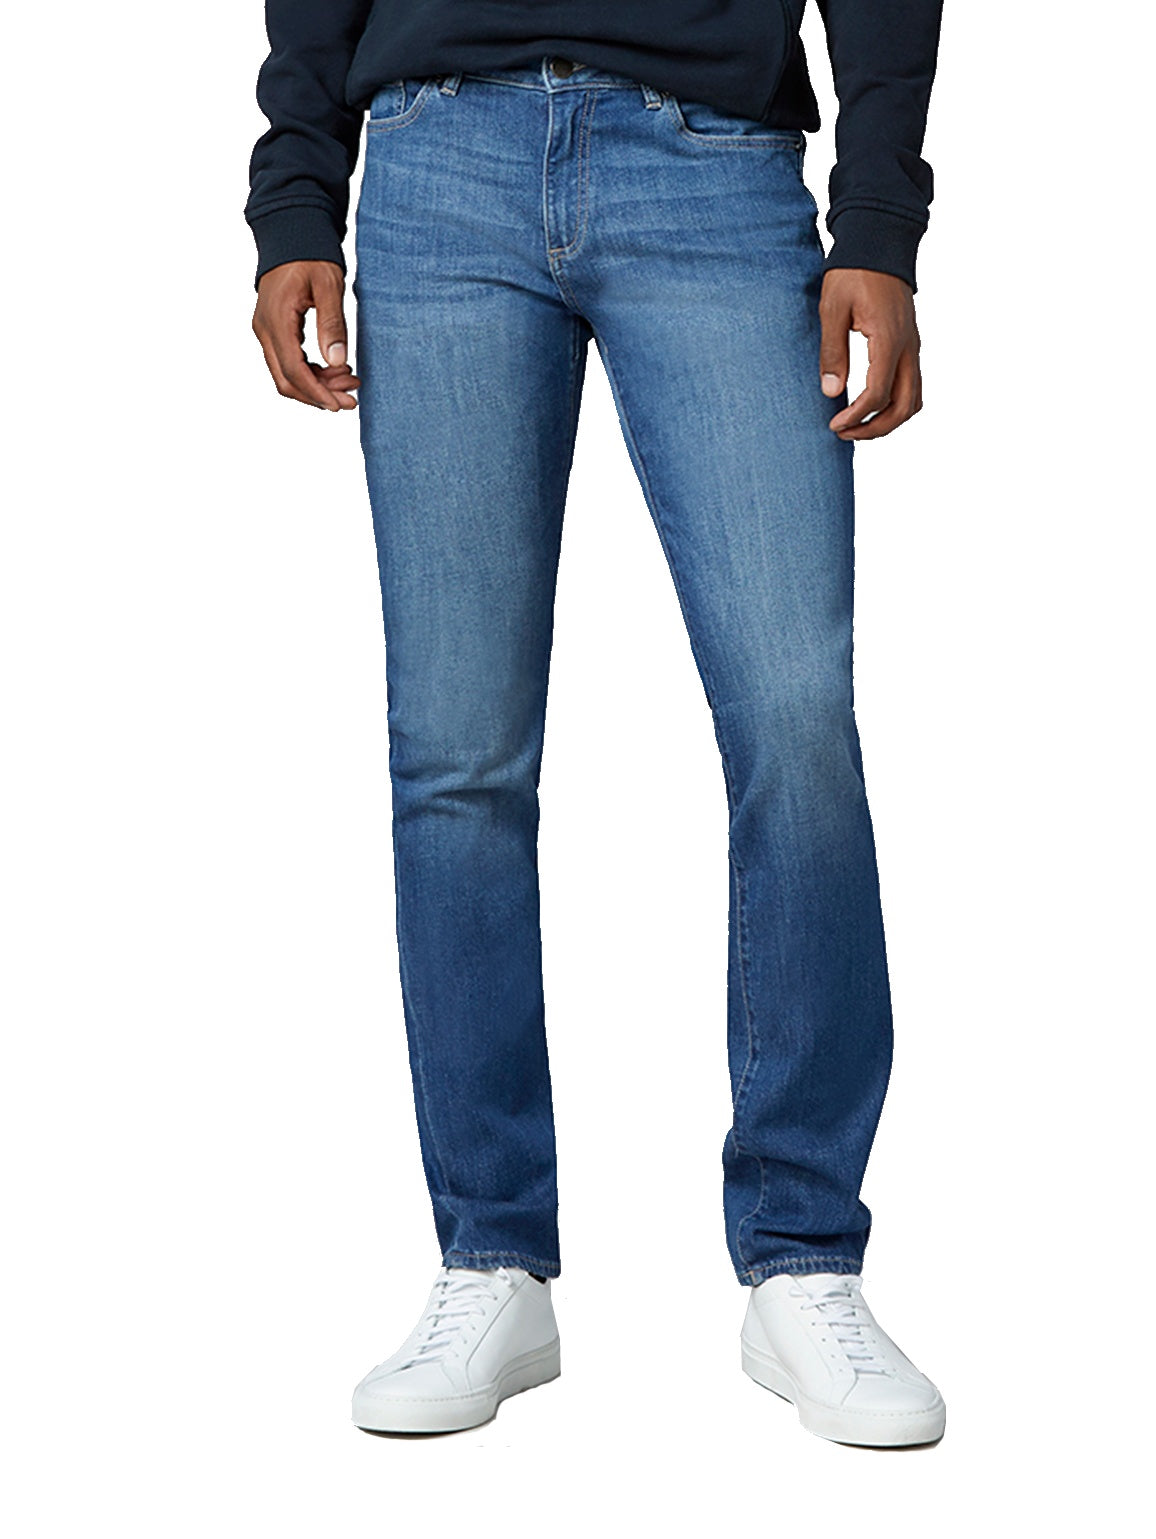 DL1961 Nick Slim Fit Seaport Ultimate Soft Jeans | eBay